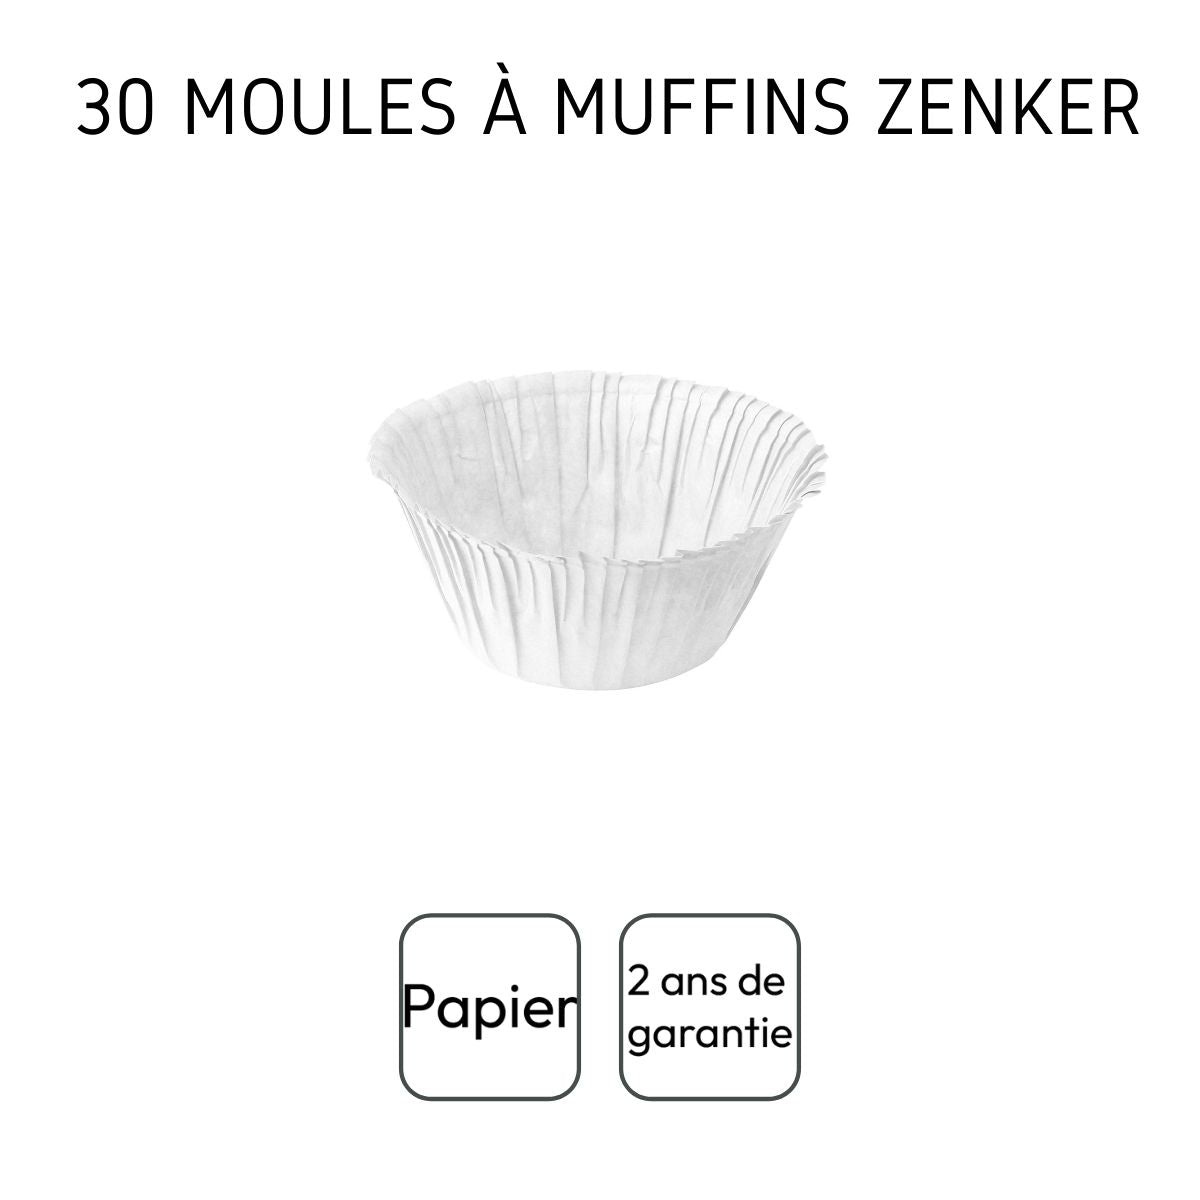 Lot de 30 moules à muffins en papier blanc Zenker